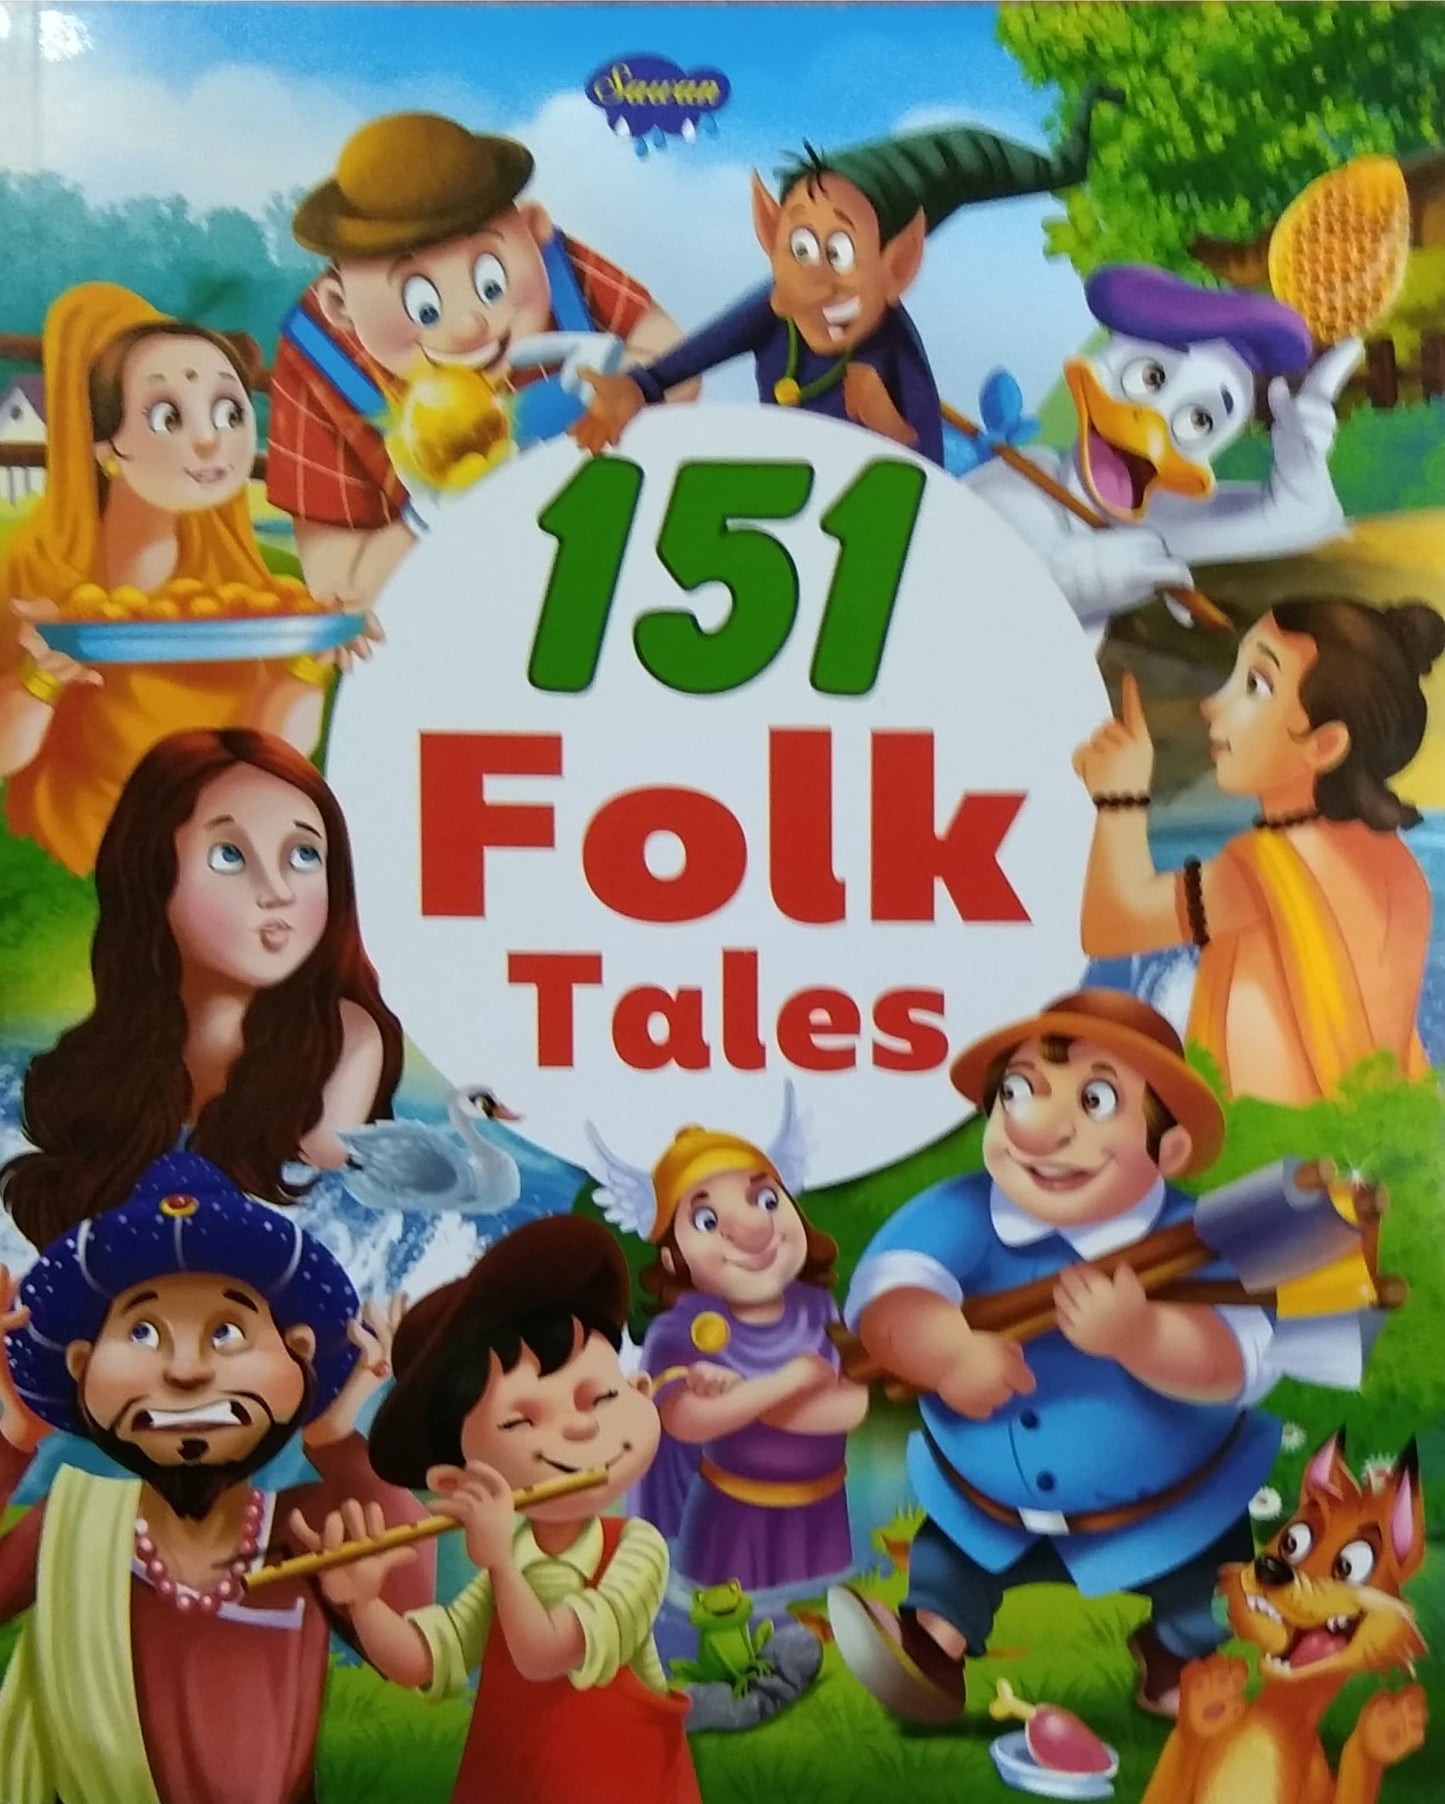 151 Folk Tales